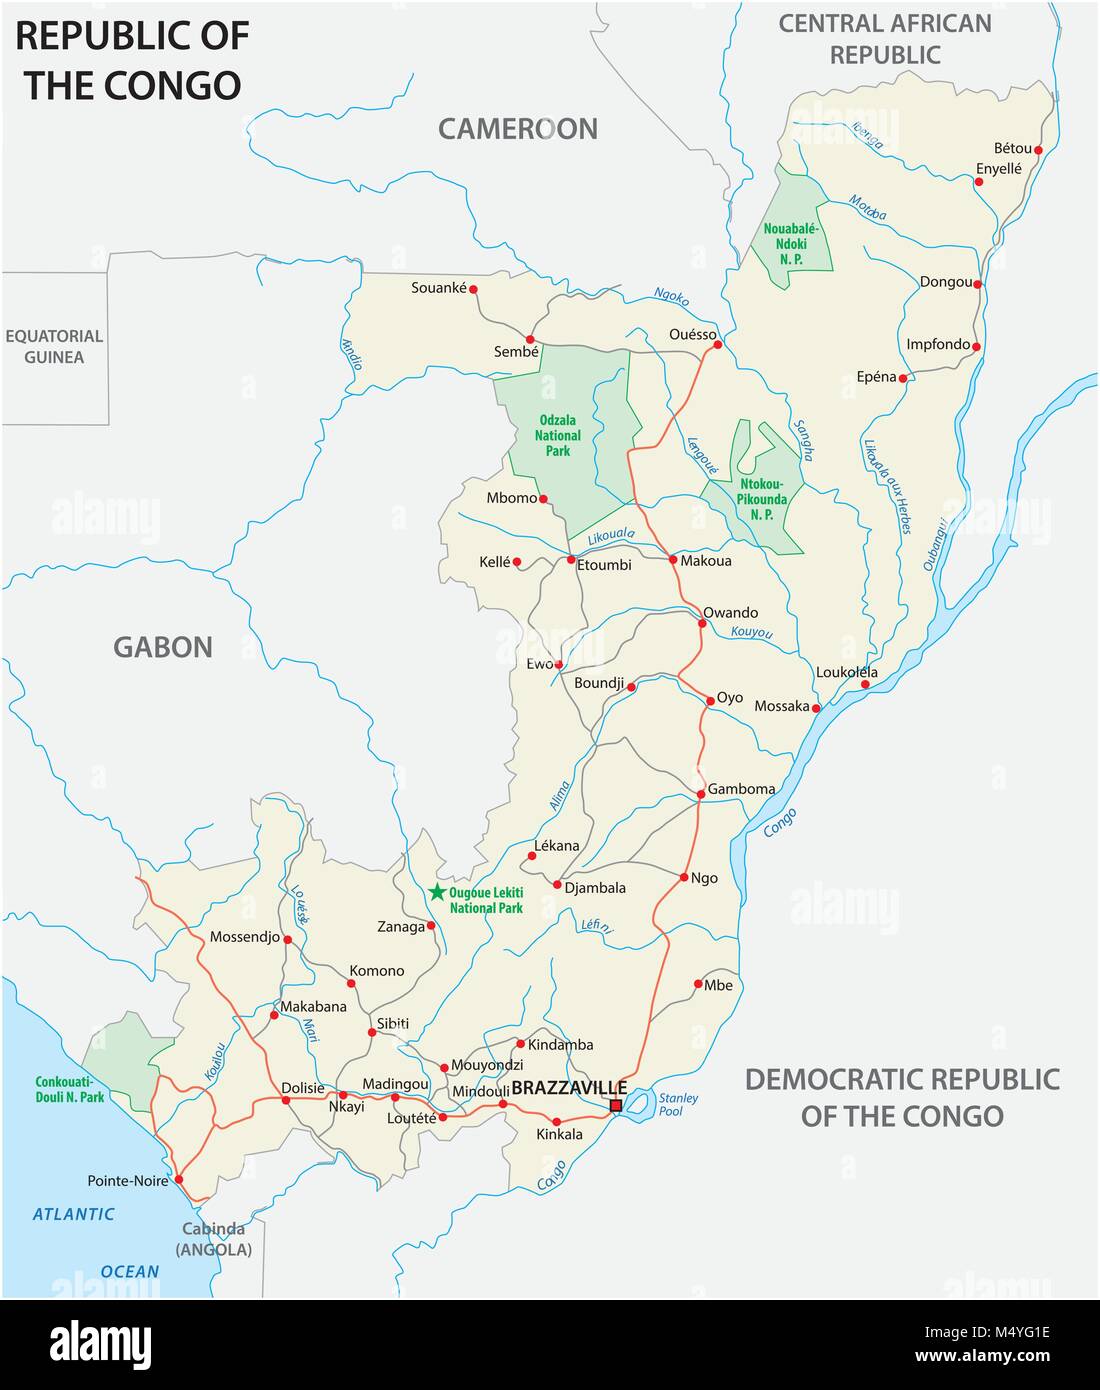 República del Congo road mapa vectorial Ilustración del Vector